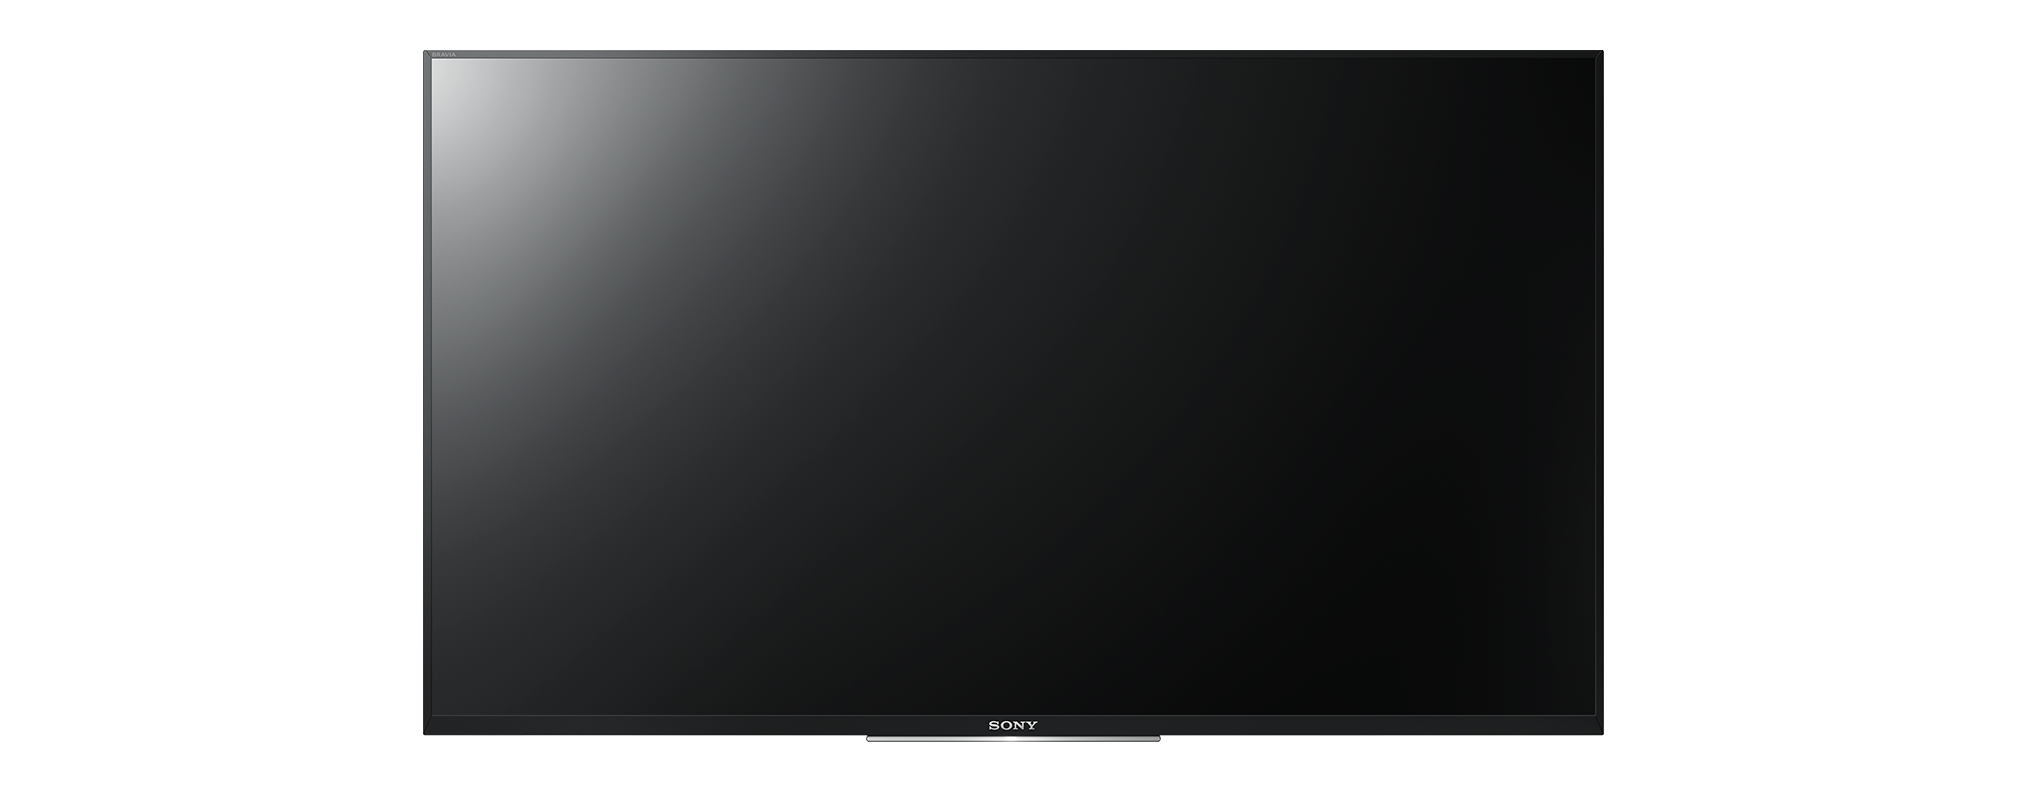 Светодиодный телевизор PNG -файл изображения